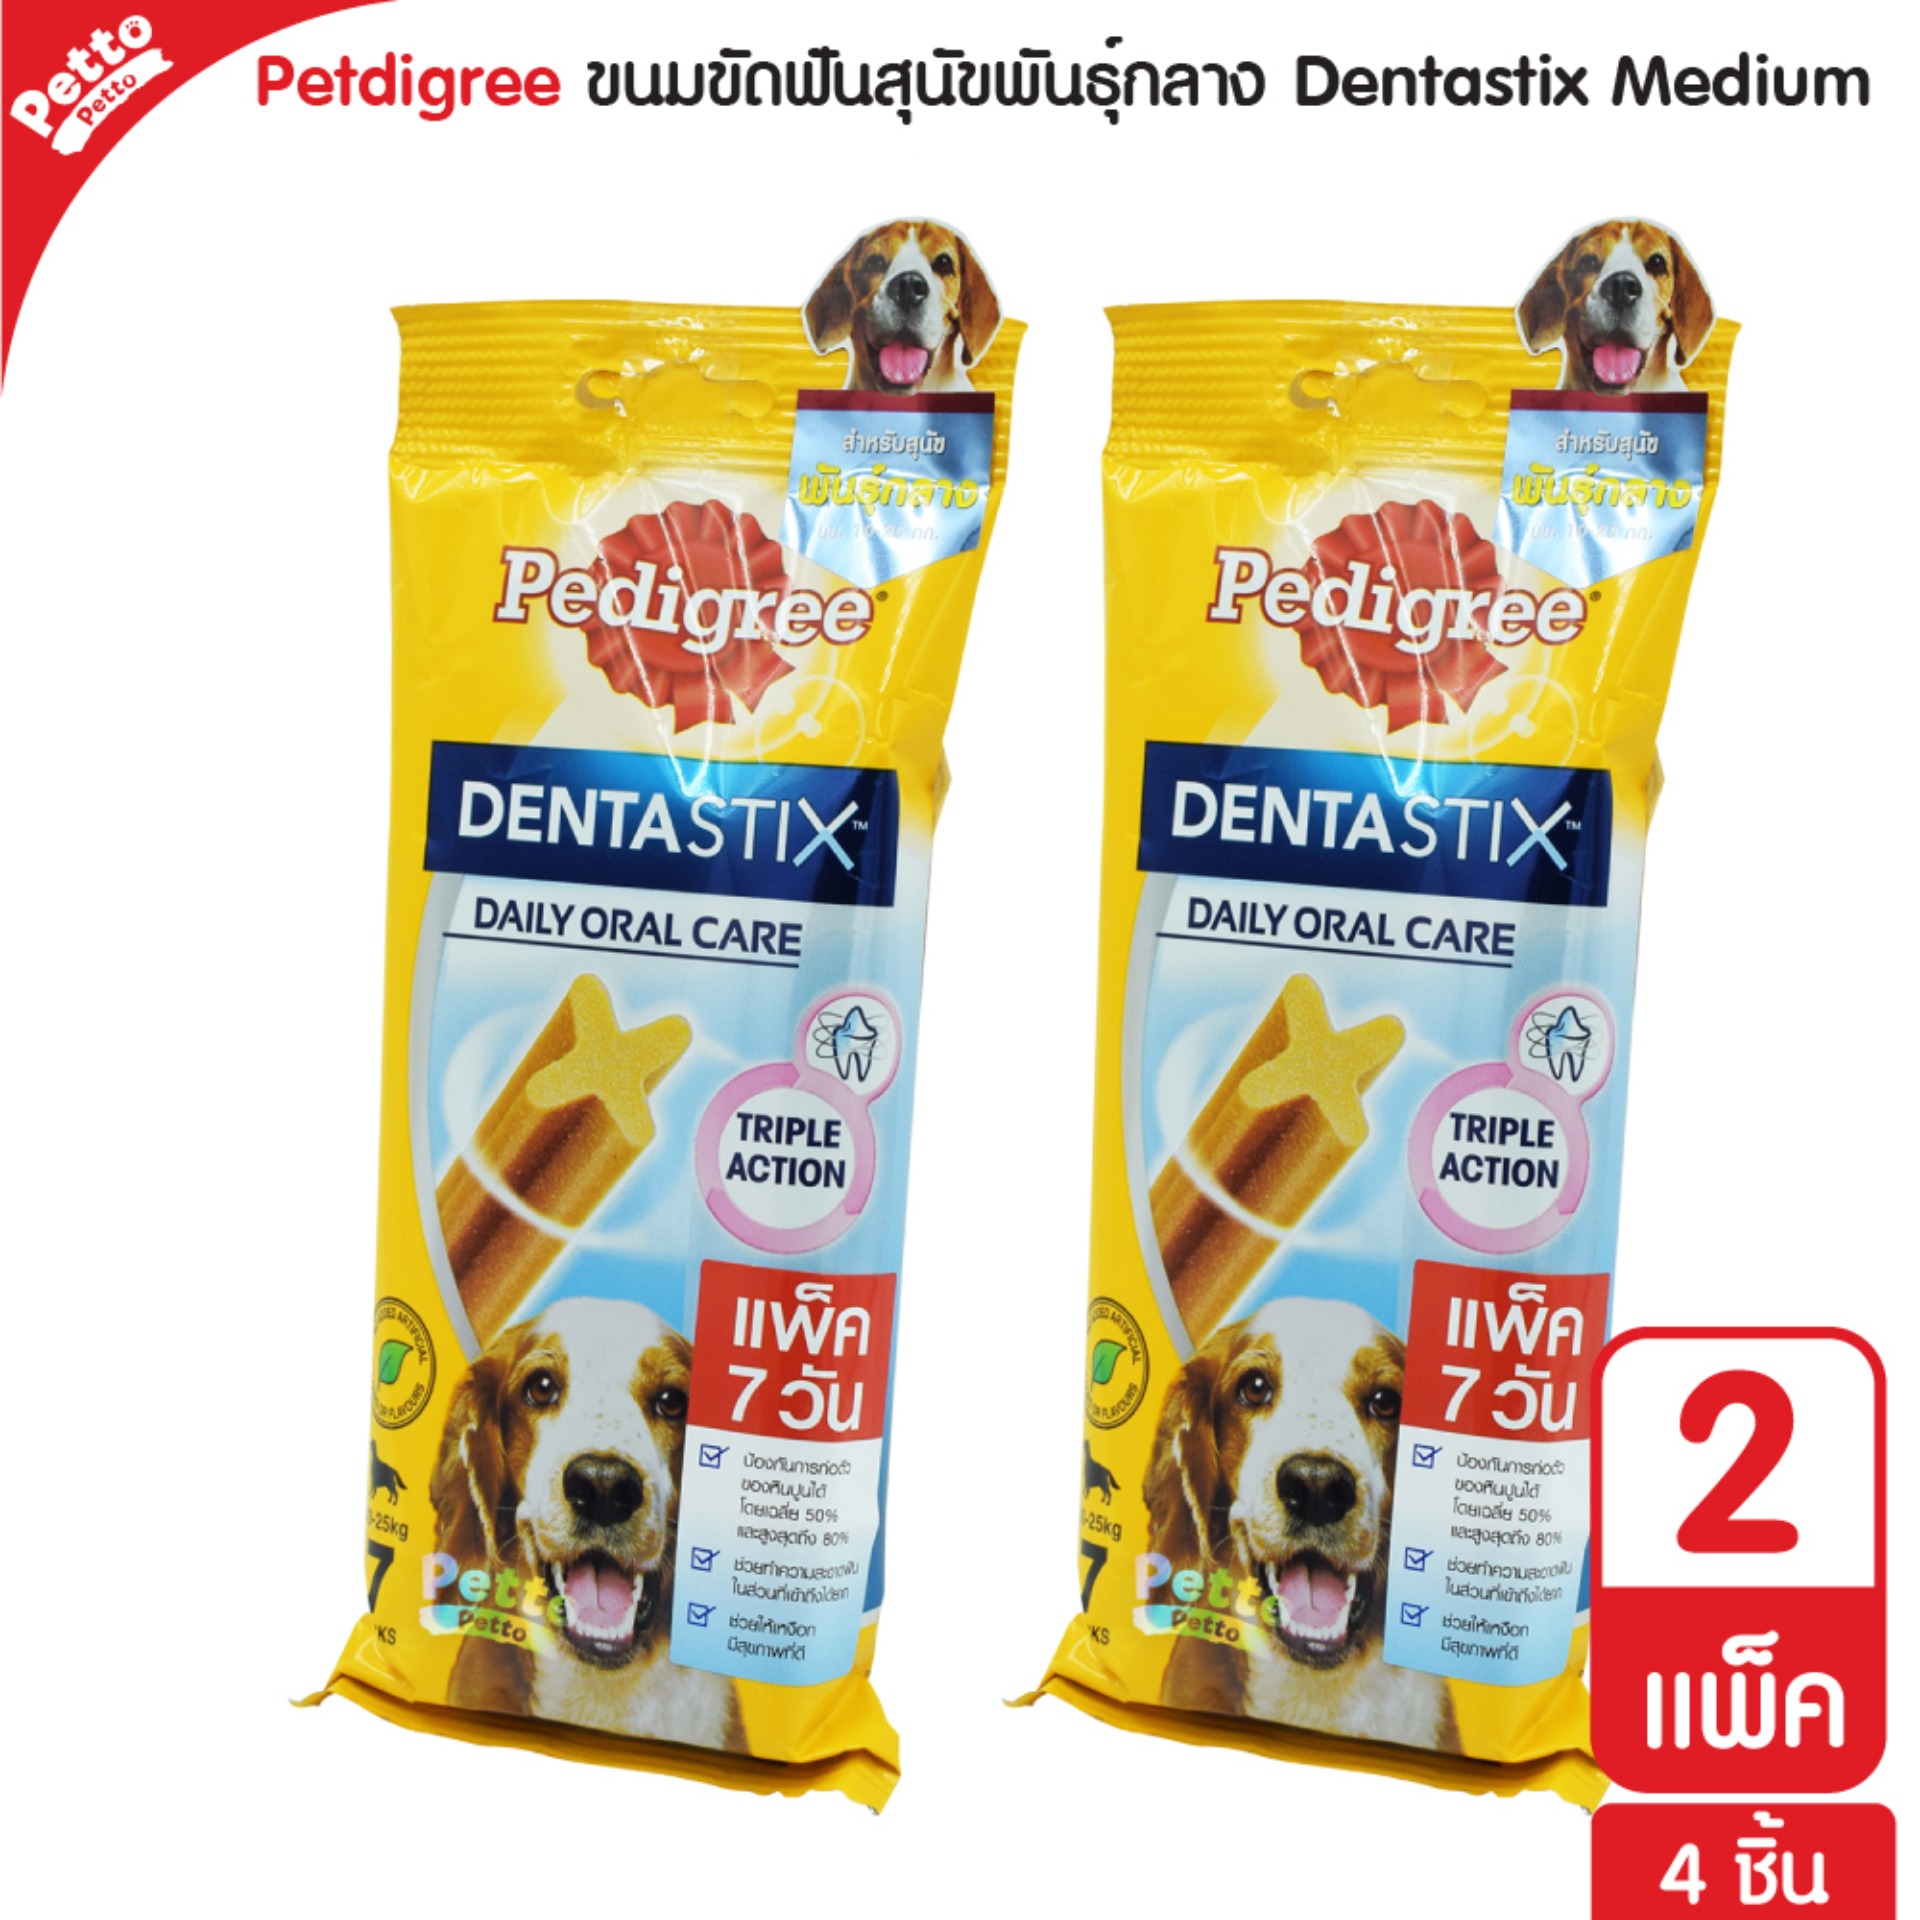 Pedigree Dentastix ขนมสุนัข ขัดฟัน ช่วยลดคราบหินปูน สำหรับสุนัขพันธุ์กลาง (7 ชิ้น/แพ็ค) - 2 แพ็ค